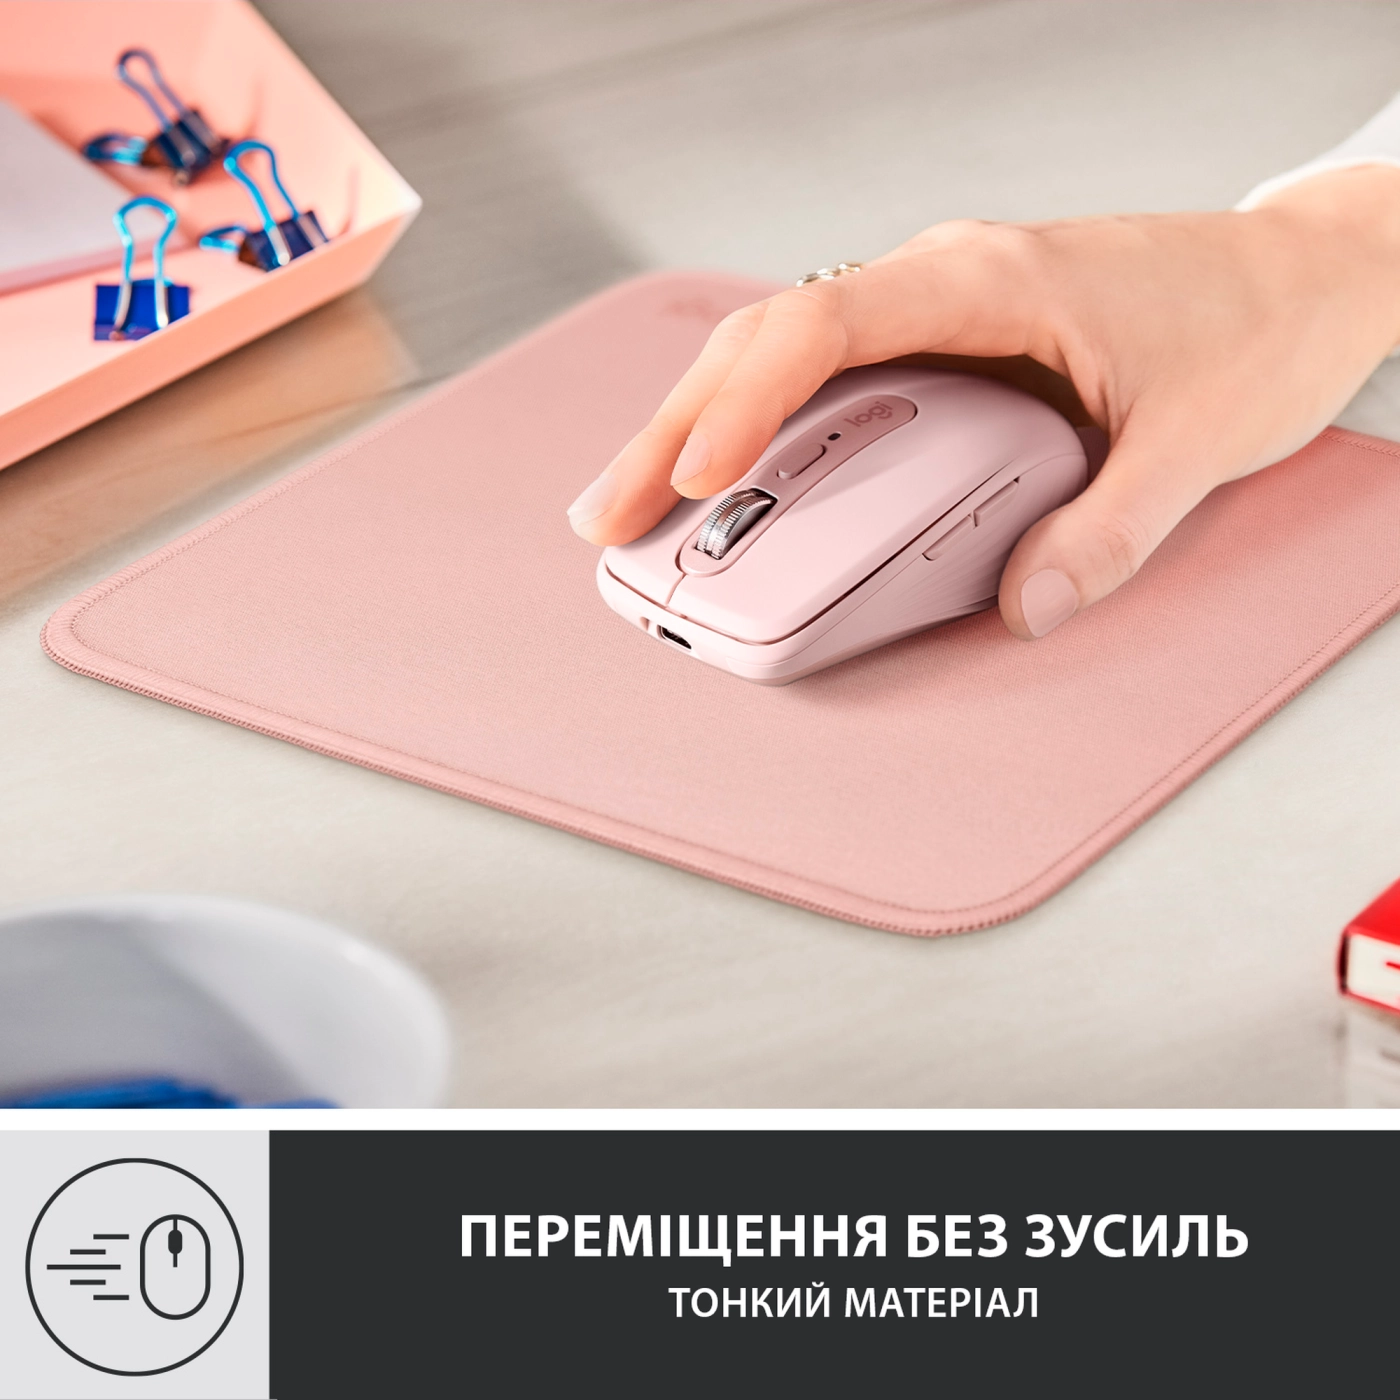 Купить Коврик для мыши Logitech Mouse Pad Studio Series DARKER ROSE (956-000050) - фото 2